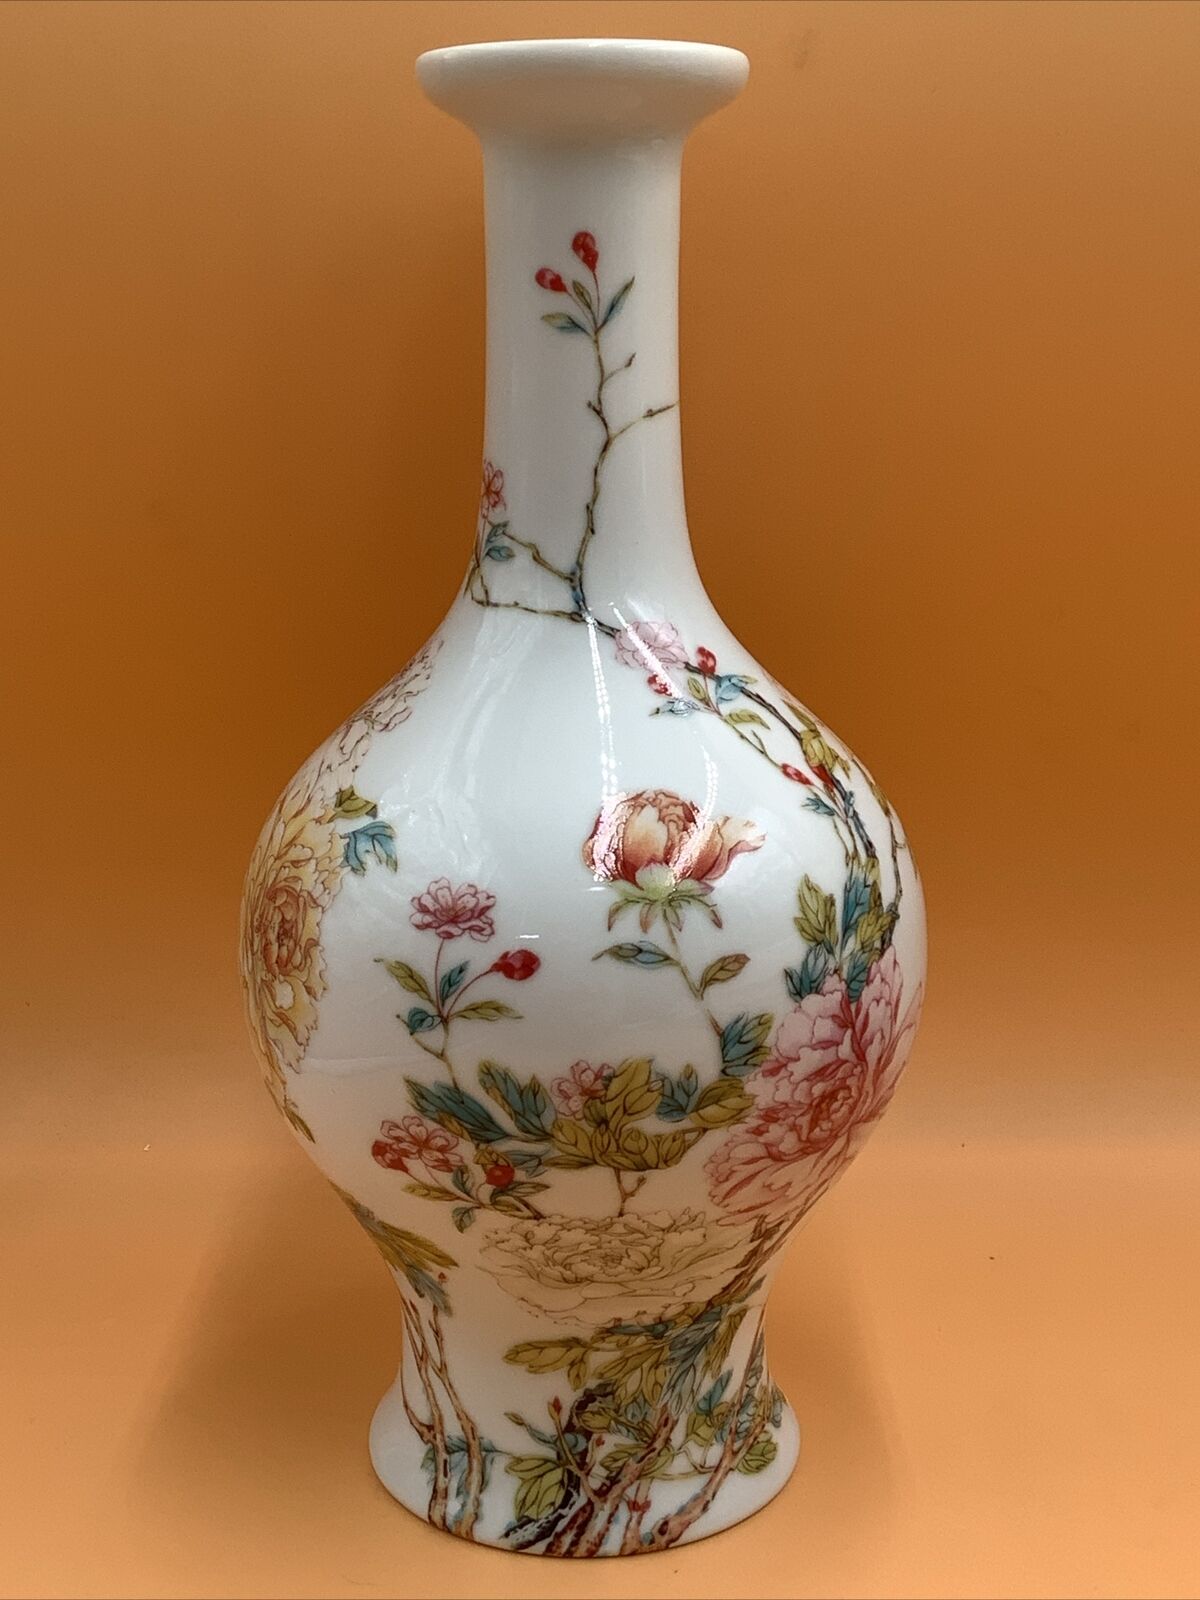 Vintage Lenox Japan Fine Porcelain Vase With Flowers - Excellent Condition